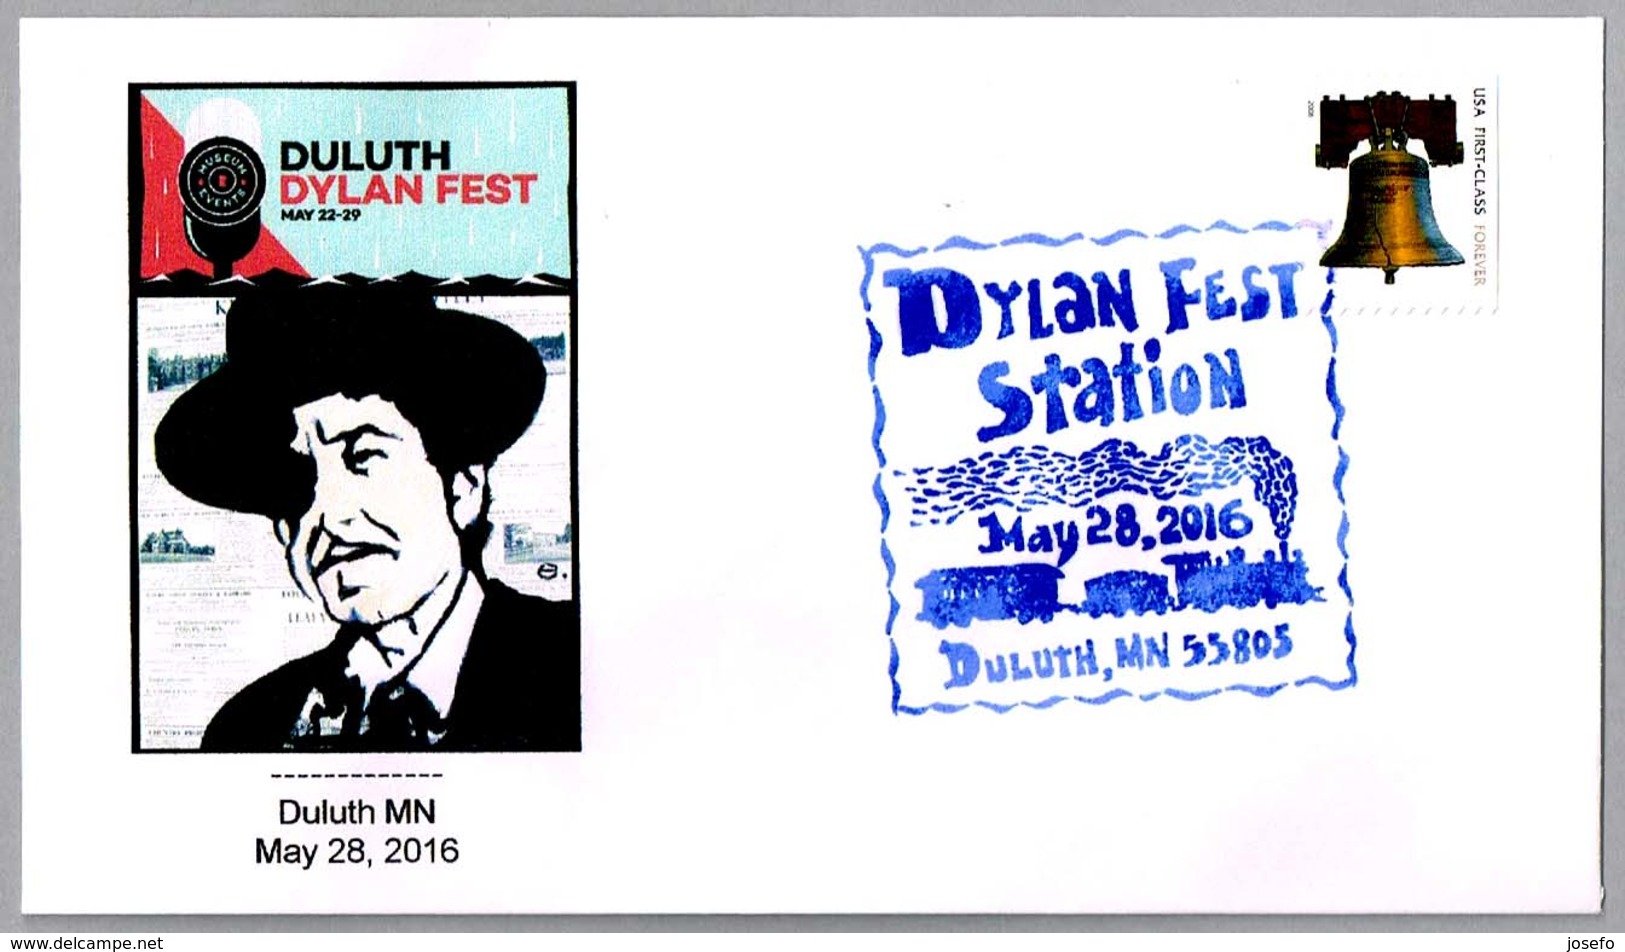 DYLAN FEST STATION - FESTIVAL BOB DYLAN. Duluth MN 2016 - Música